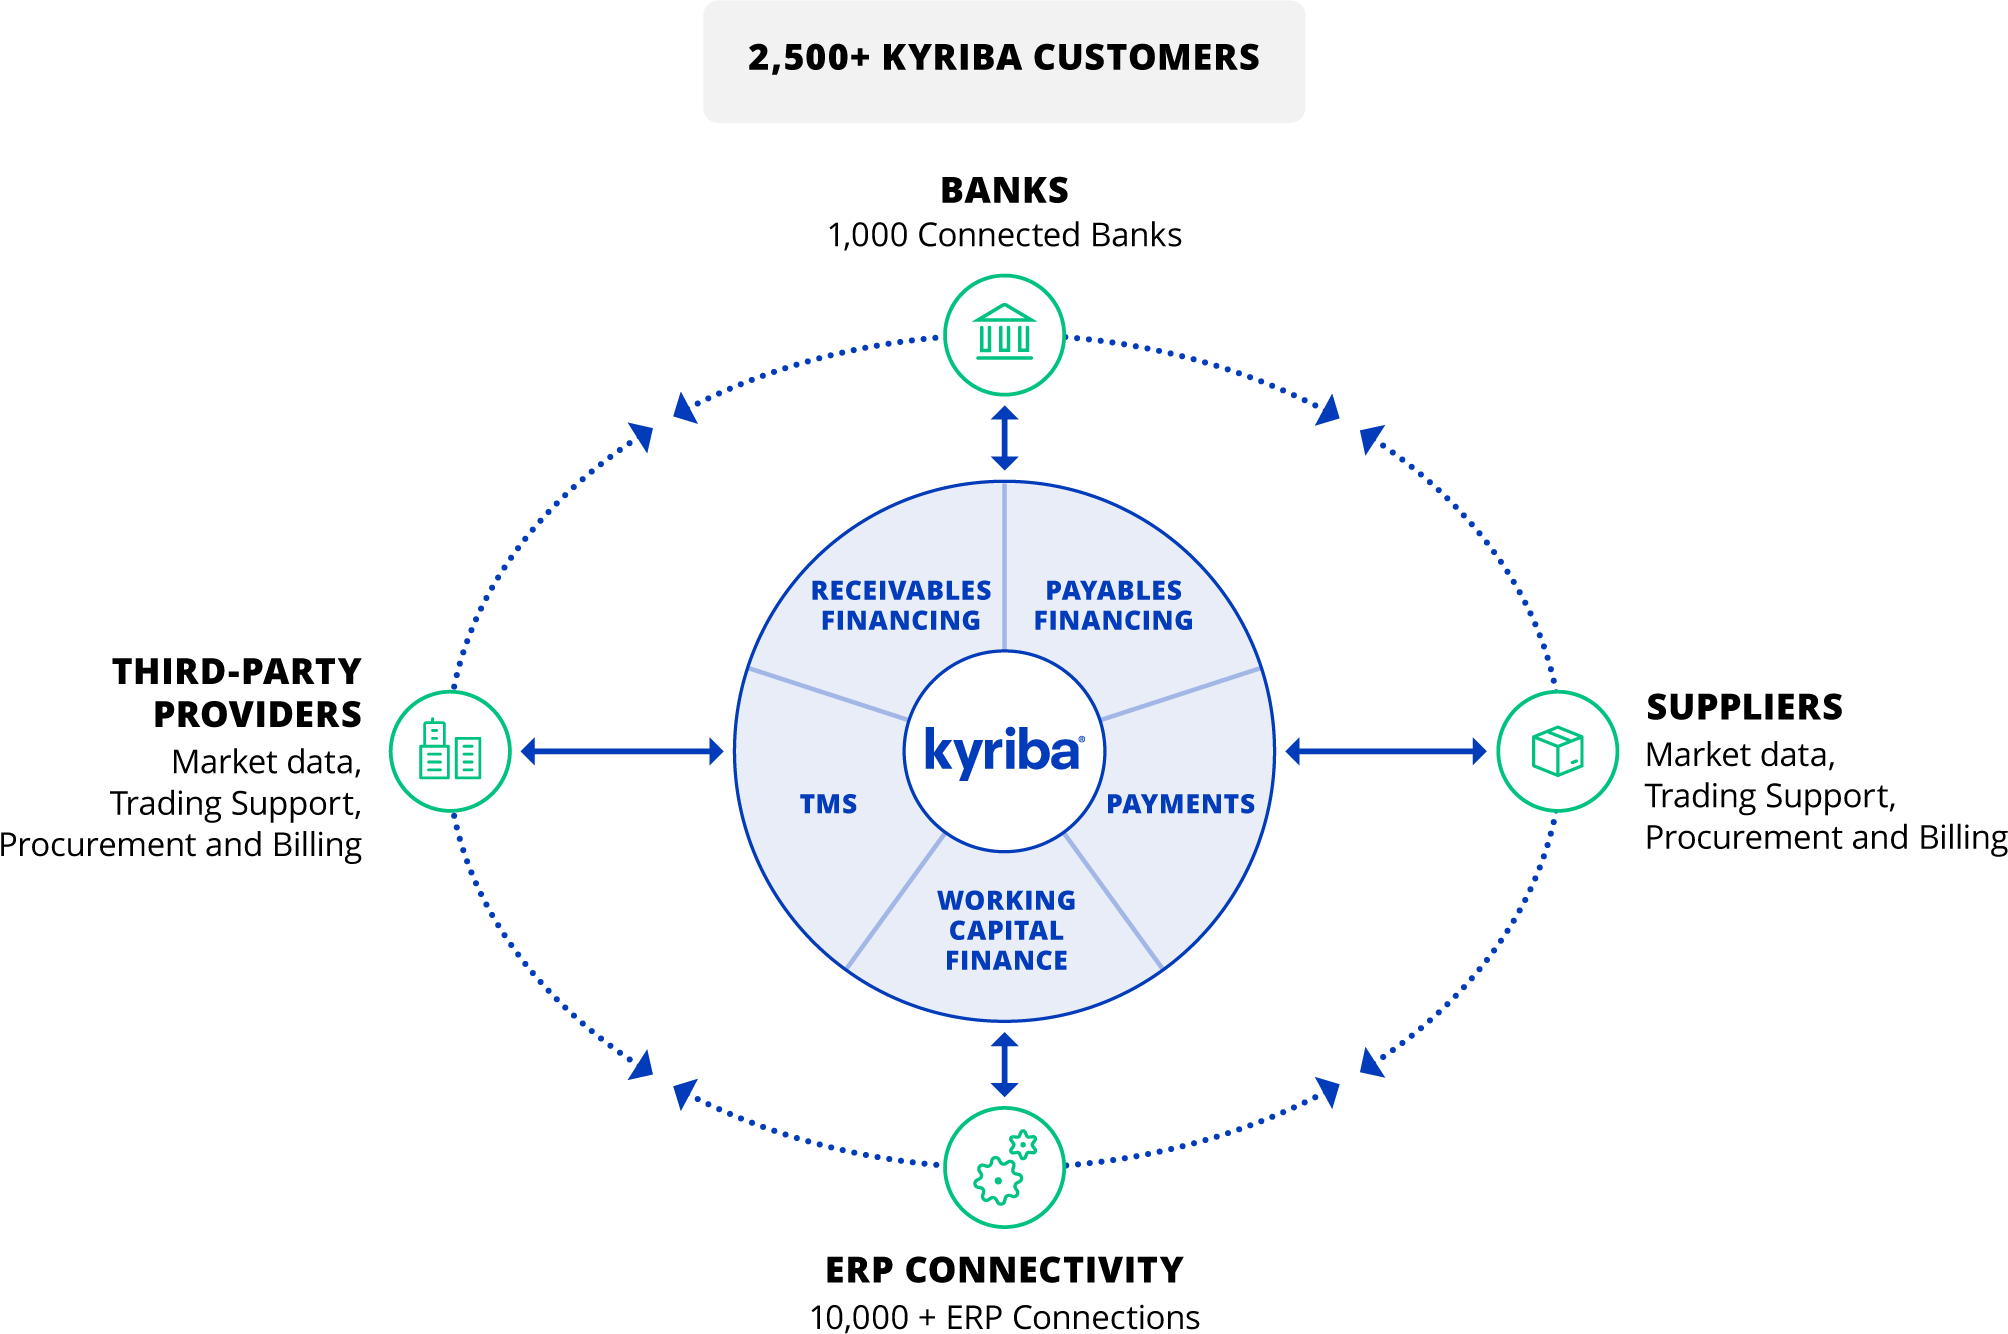 Kyriba Connectivity